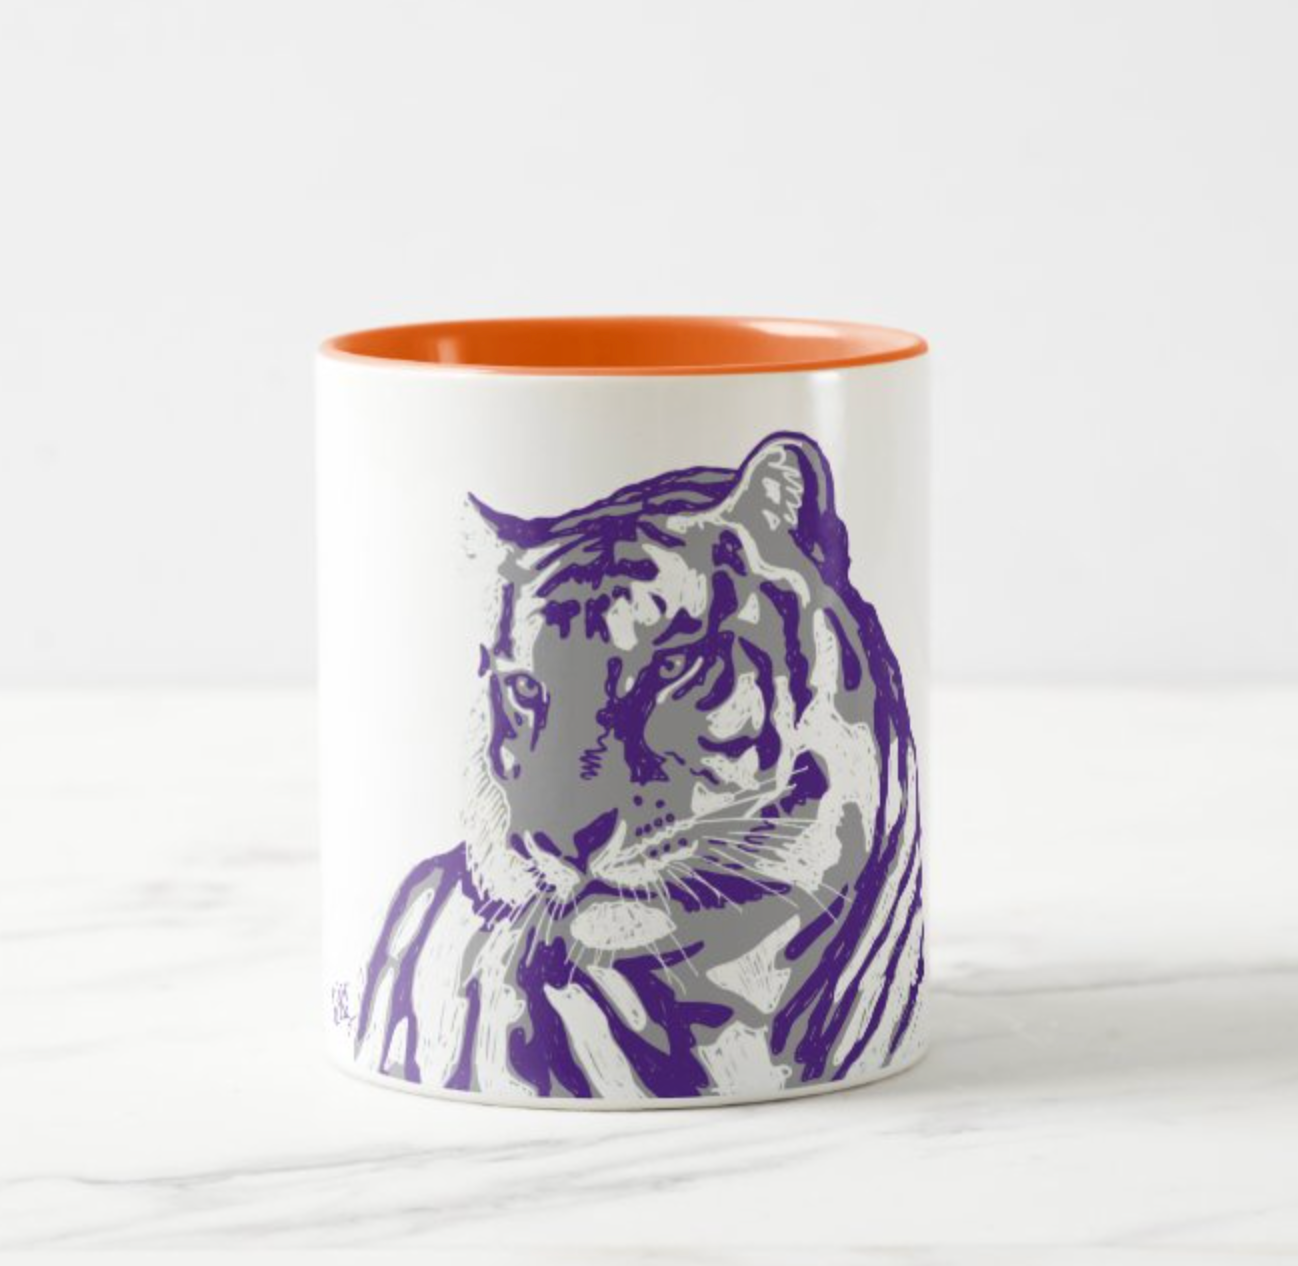 Staring Tiger Mug with Color Inside